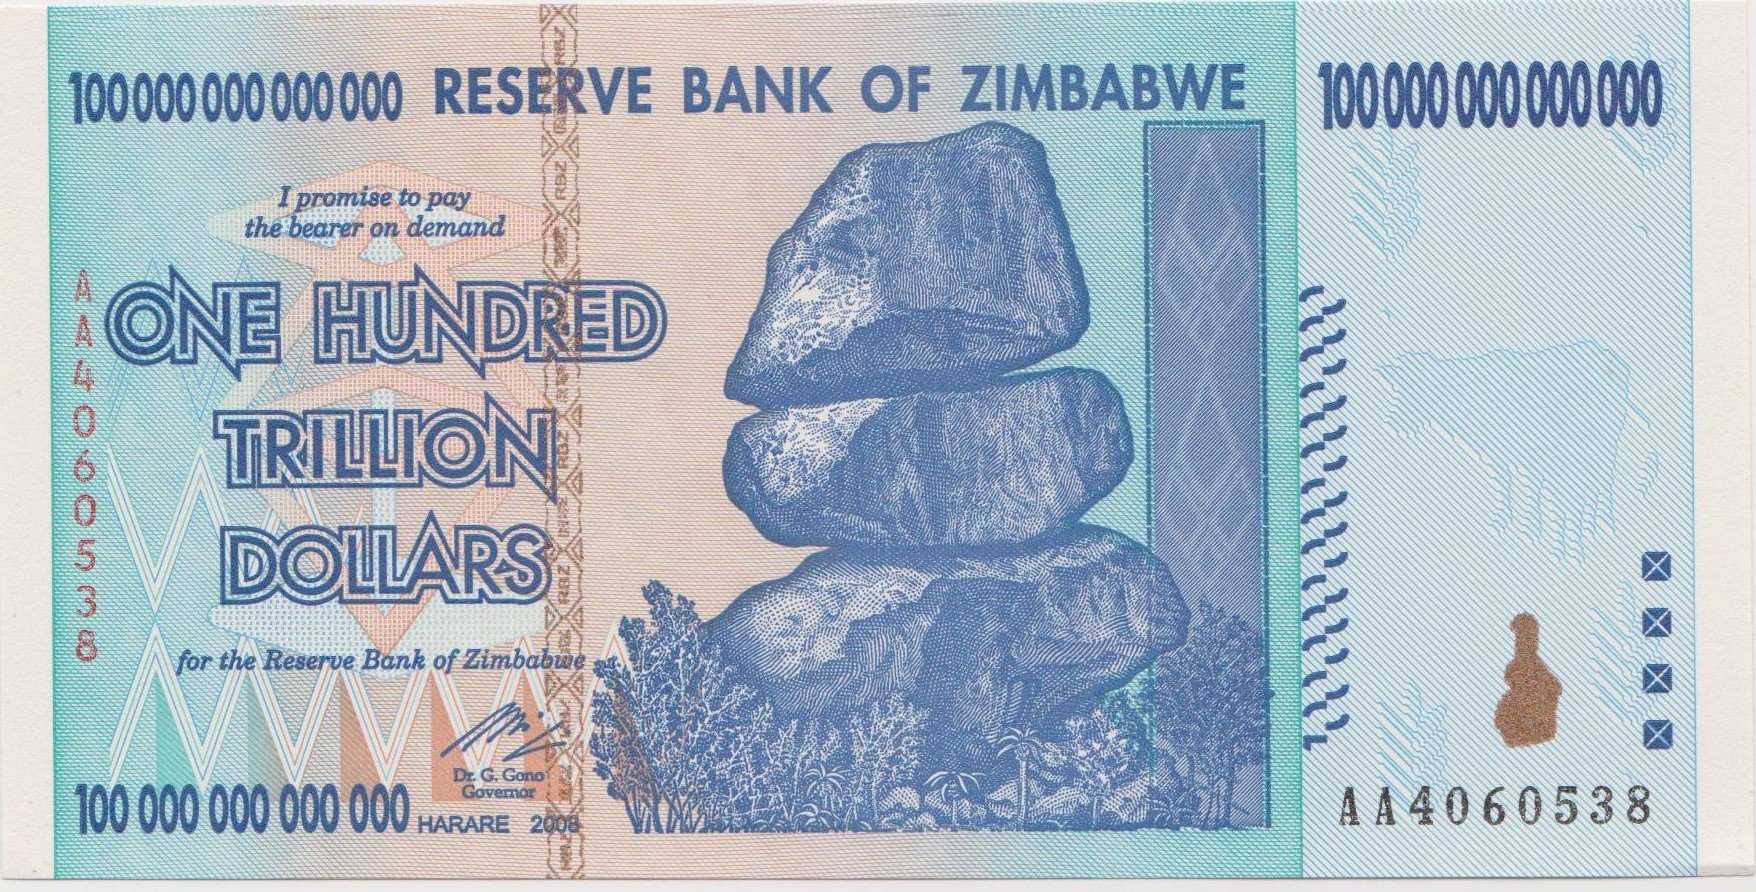 zimbabwe-banknotes-100-trillion-dollars-front_fe51e38b-9089-4925-88c7-440c76c16595.jpeg